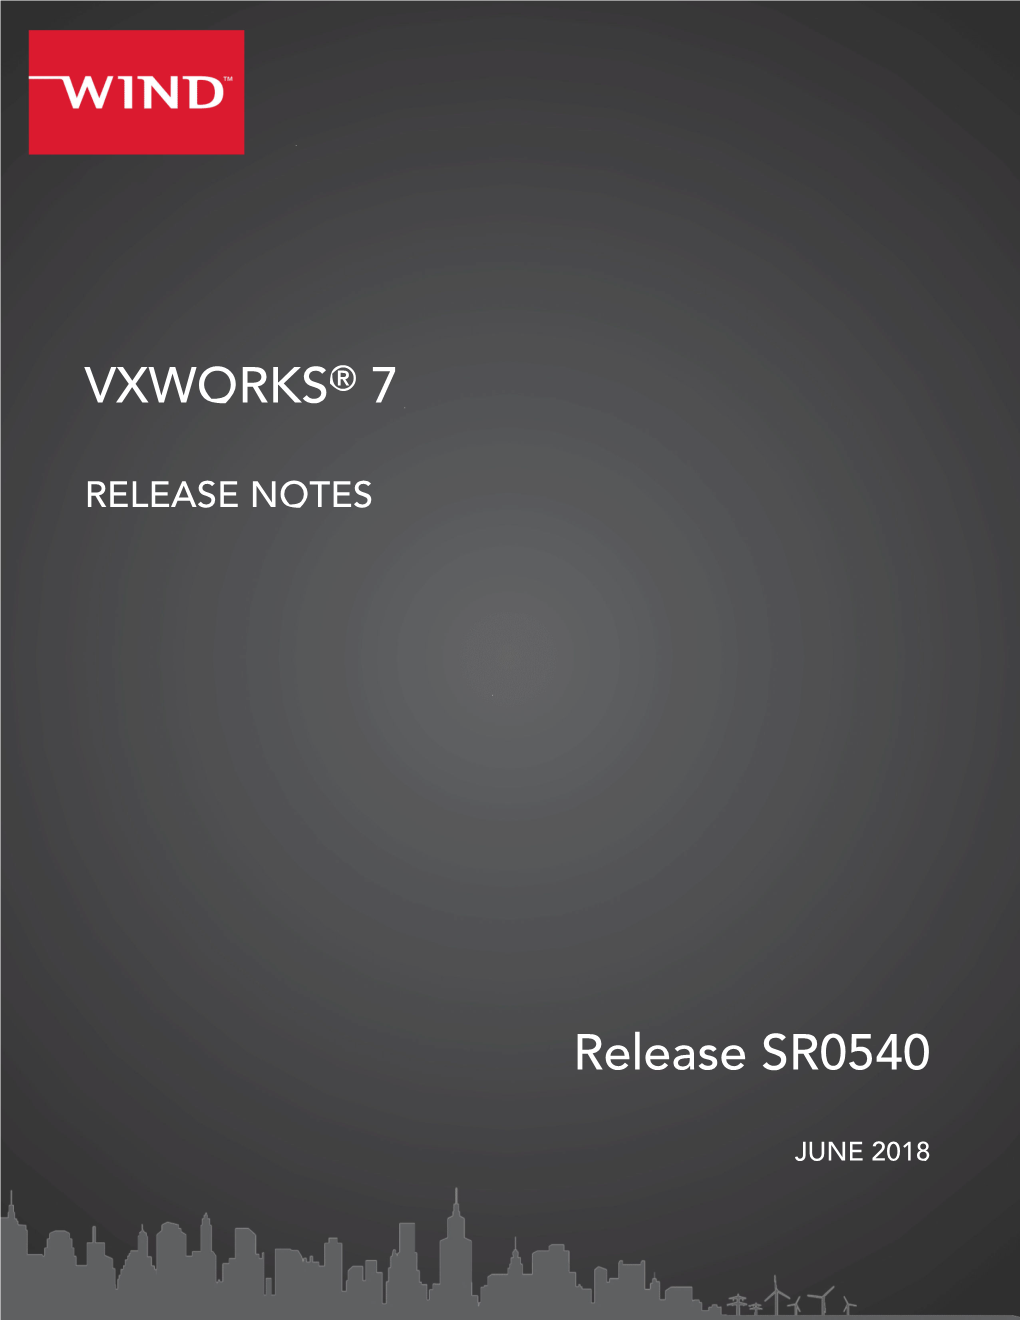 VXWORKS® 7 Release SR0540